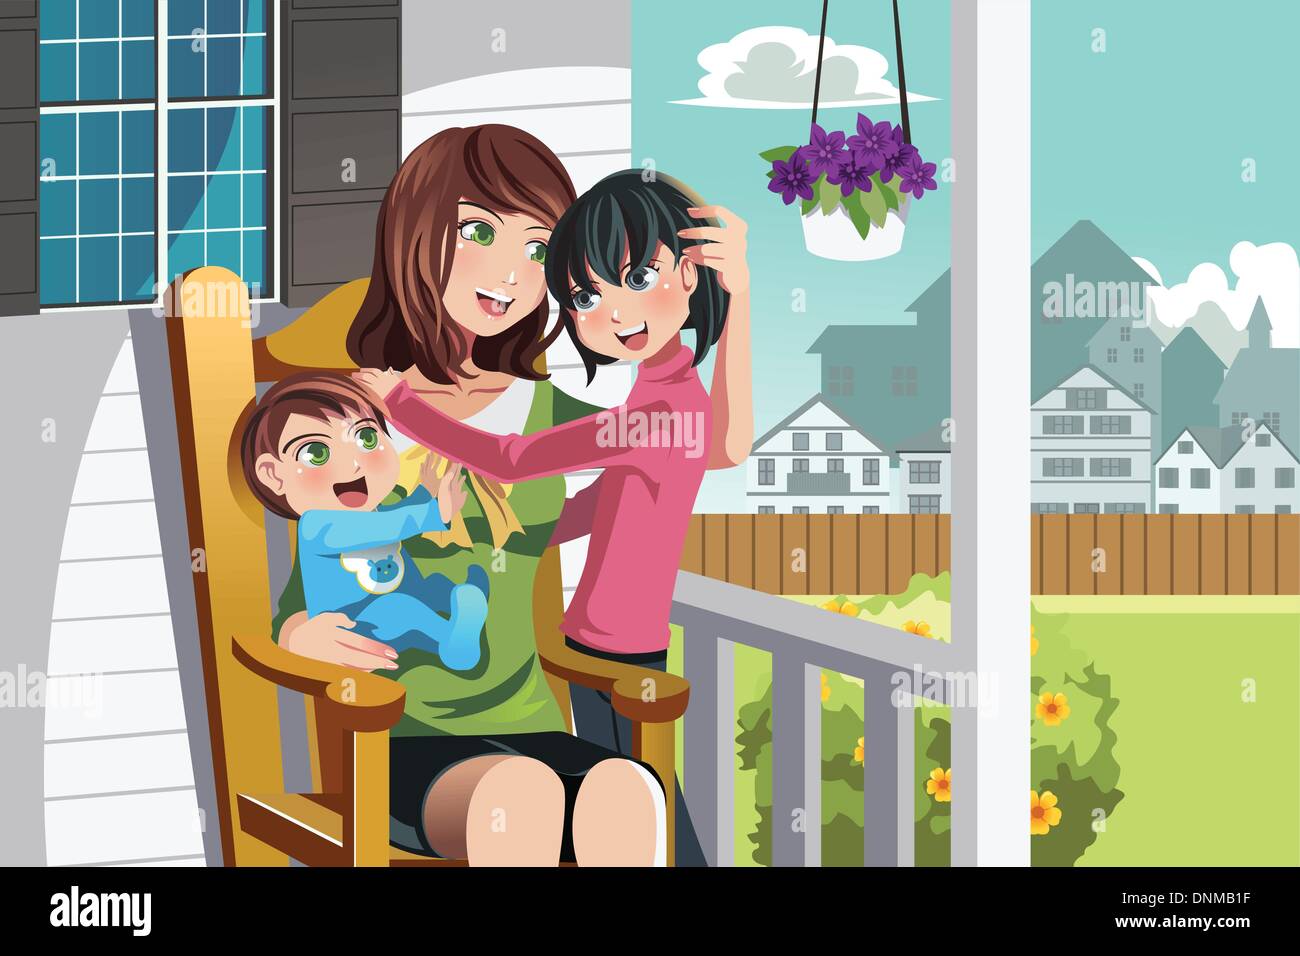 Un vecteur illustration d'une mère et ses enfants assis sur une chaise en face de leur maison Illustration de Vecteur